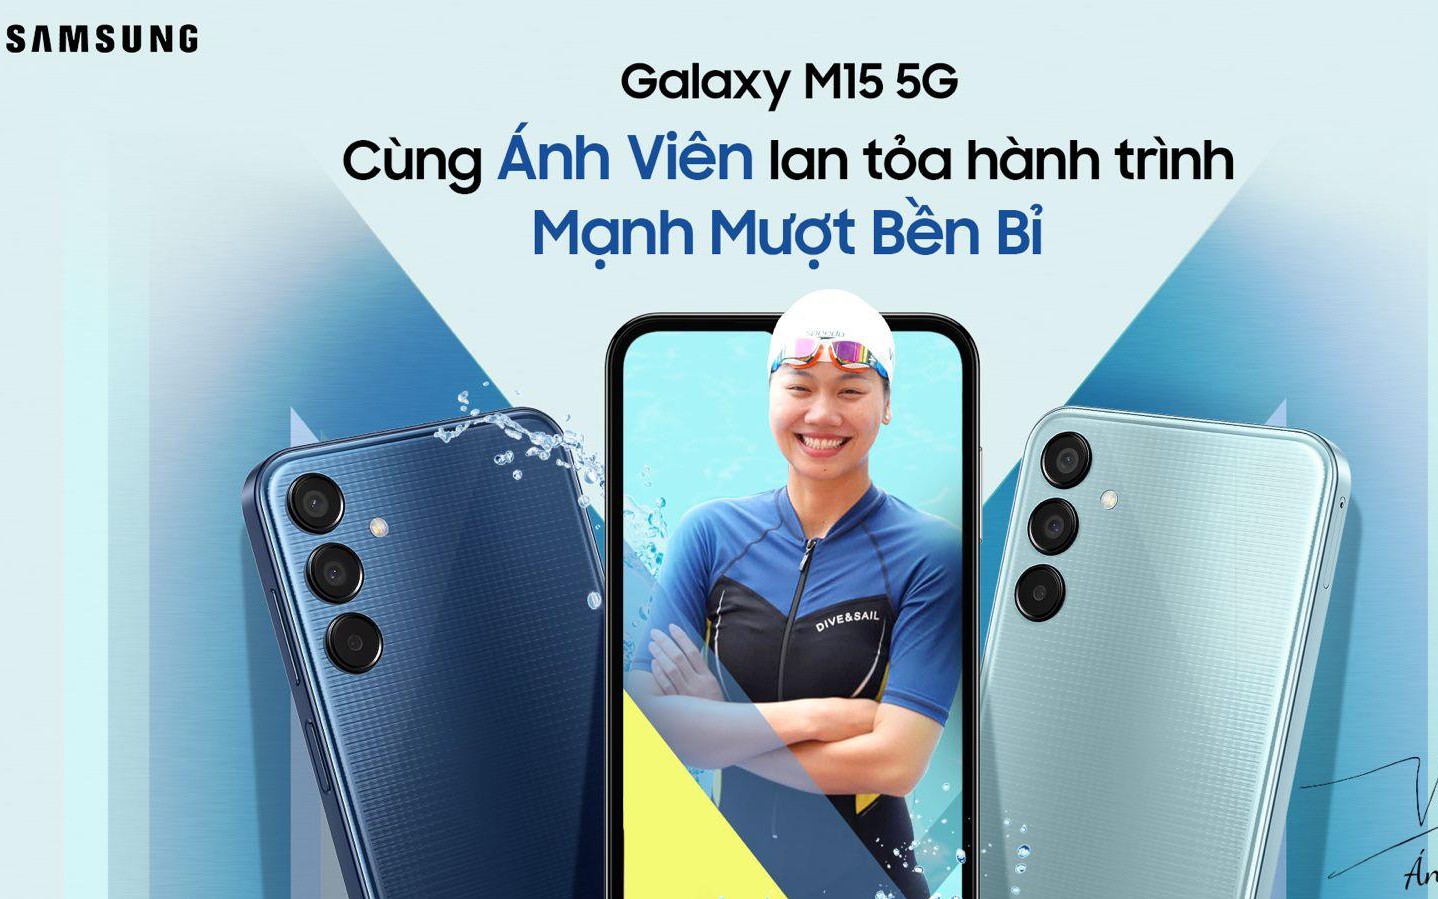 Thế Giới Di Động mở bán Samsung Galaxy M15 5G: pin 6.000 mAh, RAM 6GB giá chỉ 4,99 triệu đồng